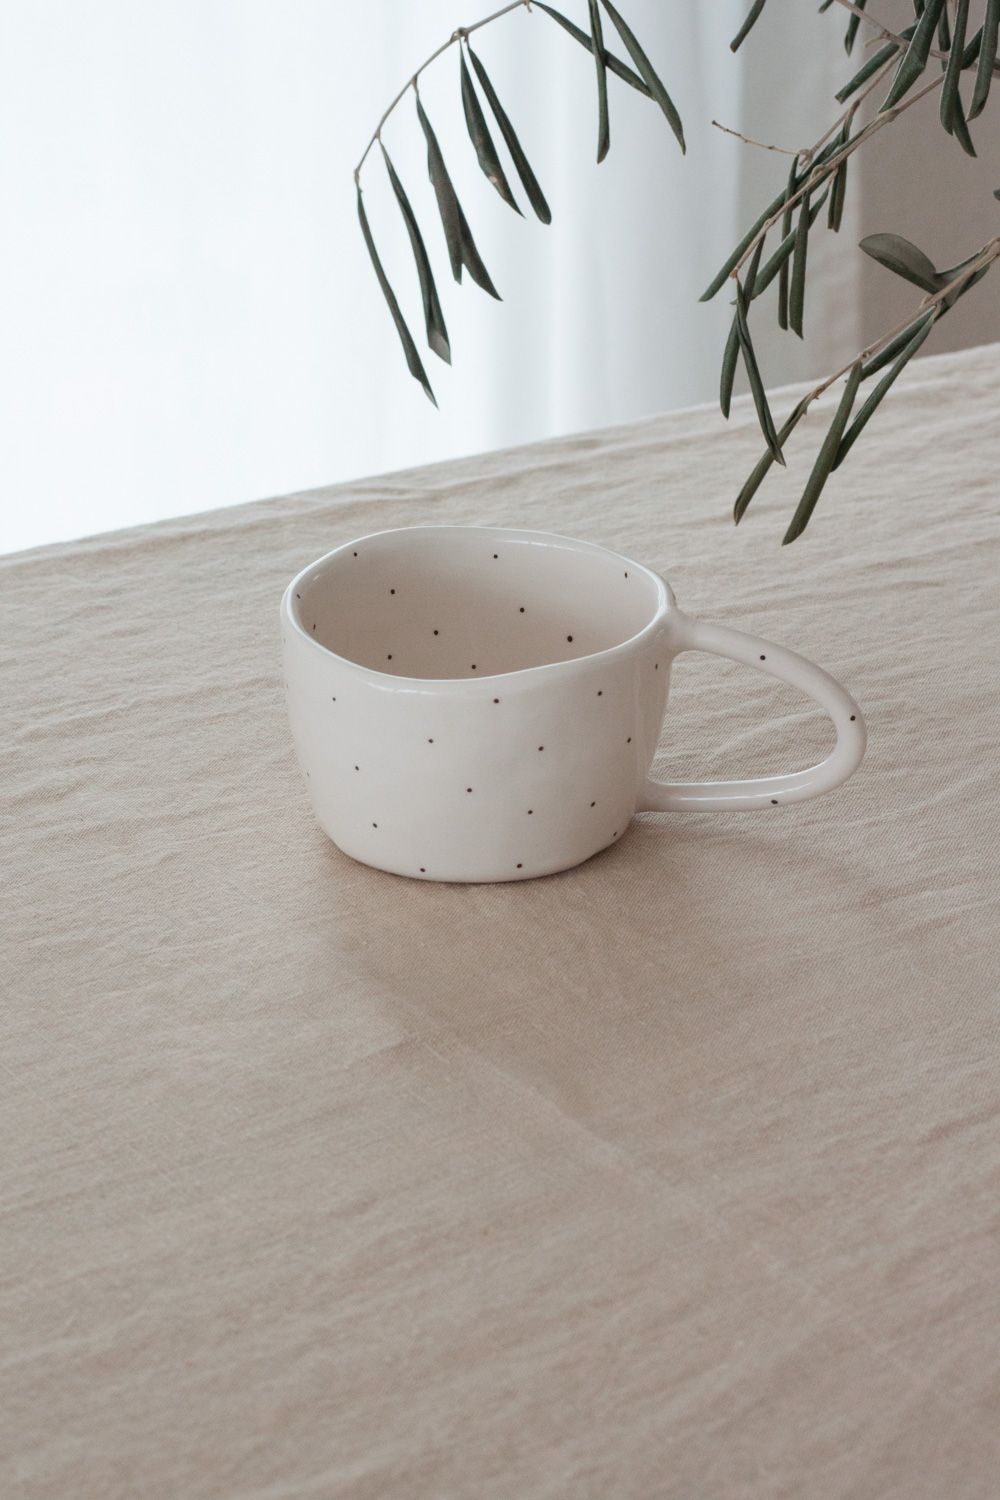 Terra Handmade Ceramic Mug - Polka Dot